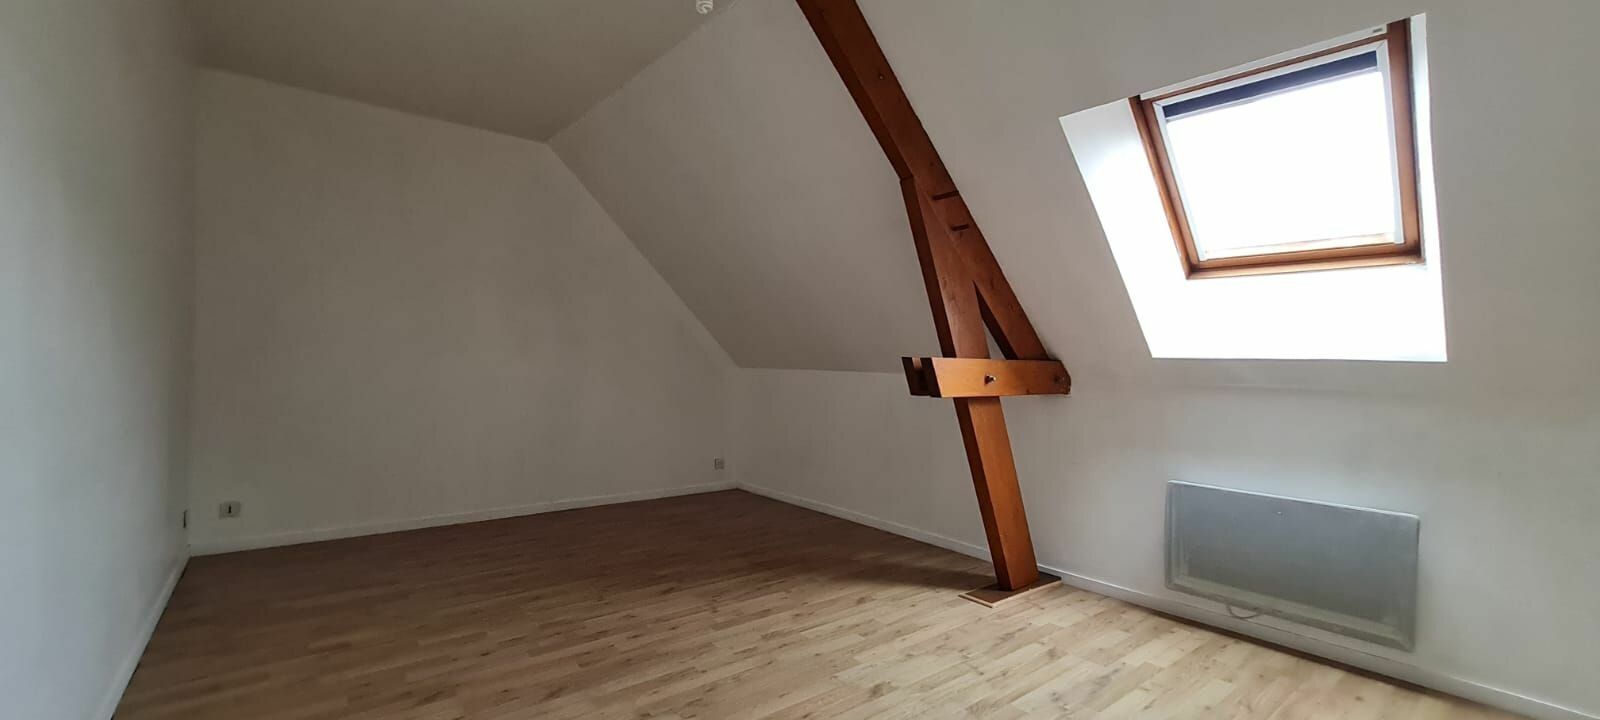 Appartement à vendre 4 71.35m2 à La Ferté-sous-Jouarre vignette-6